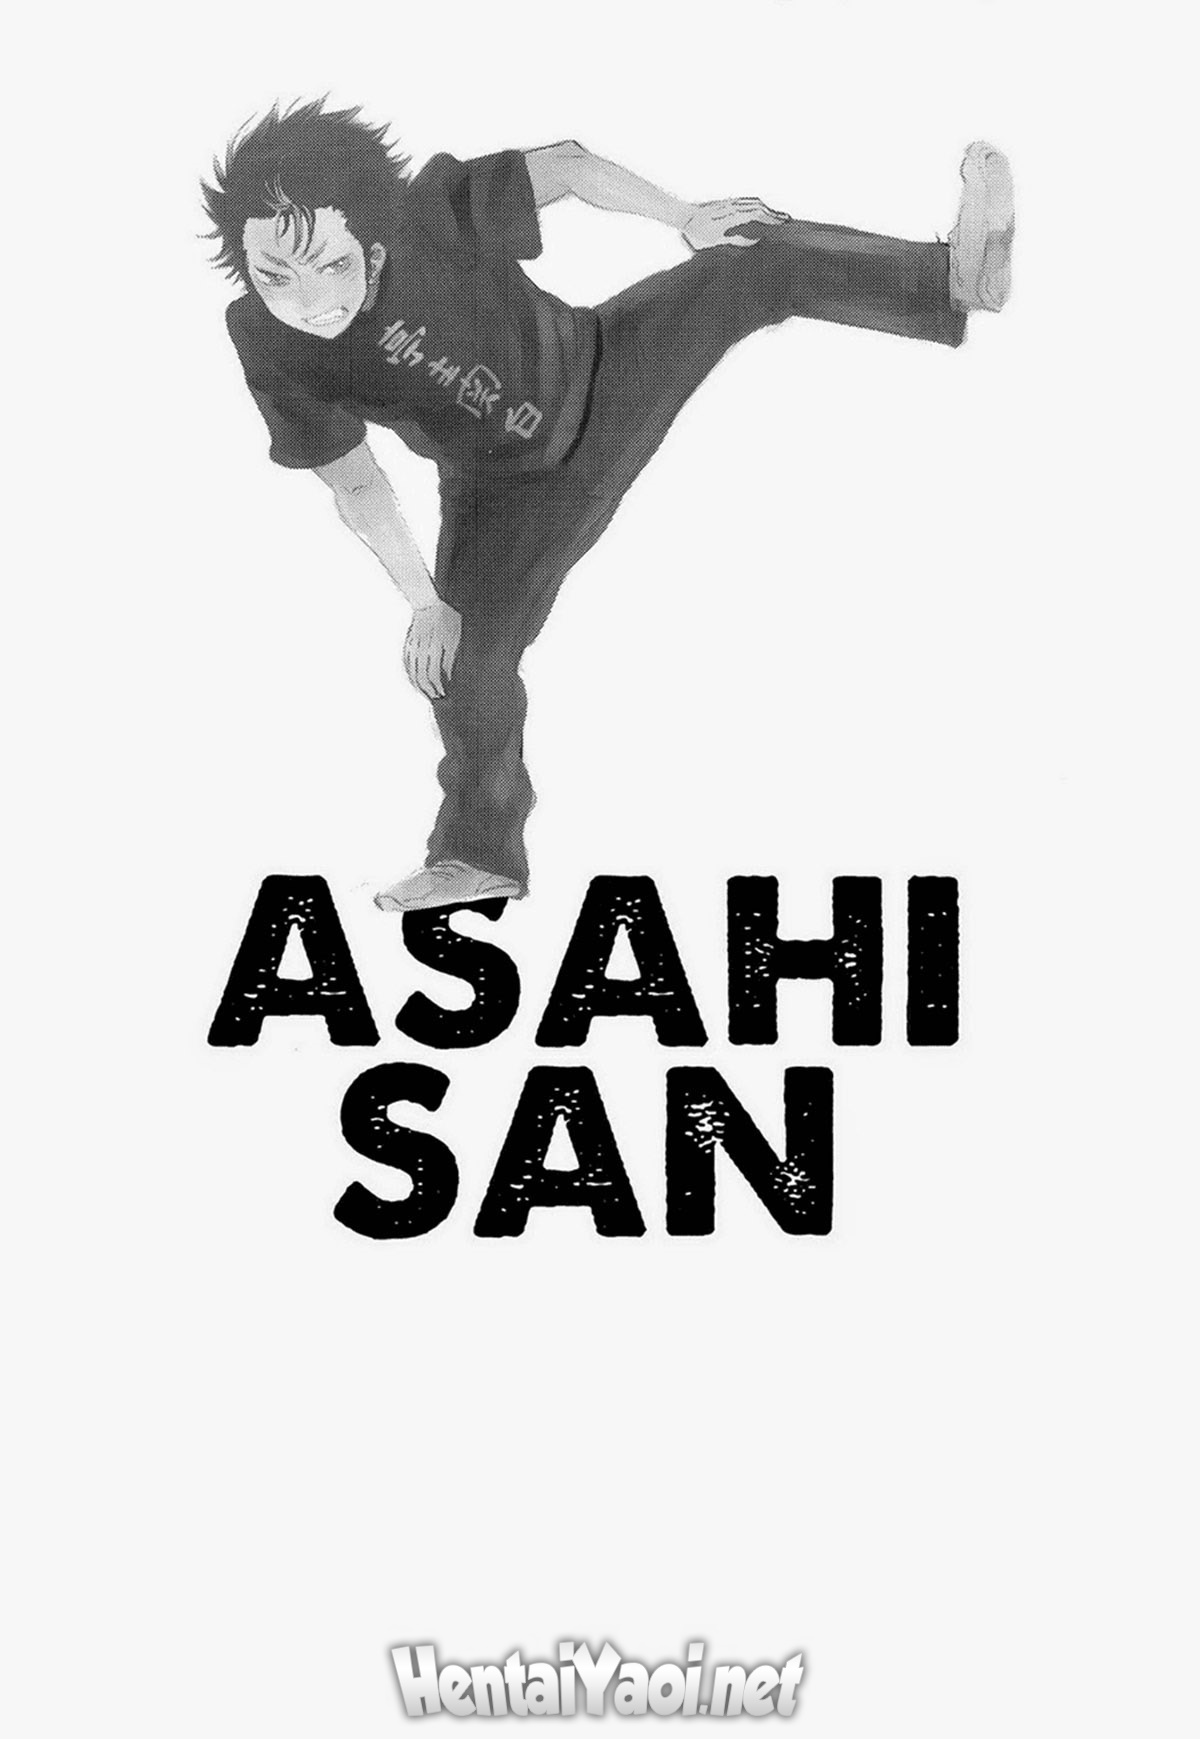 Asahi San